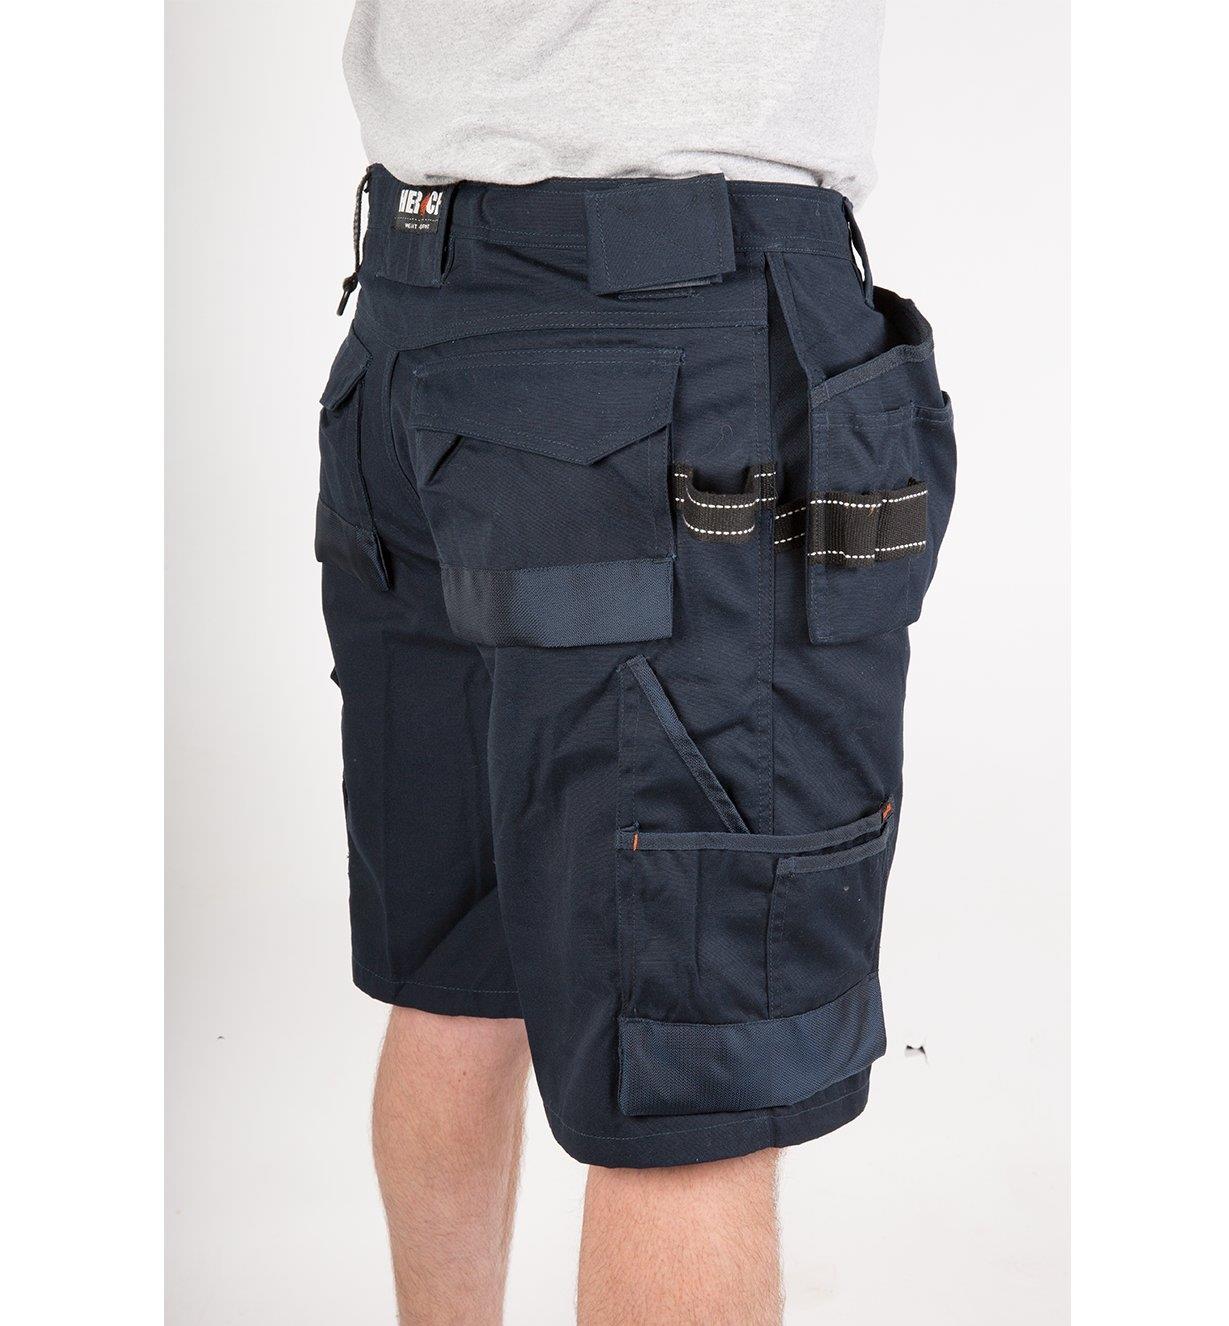 Herock Work Wear – Pallas Shorts